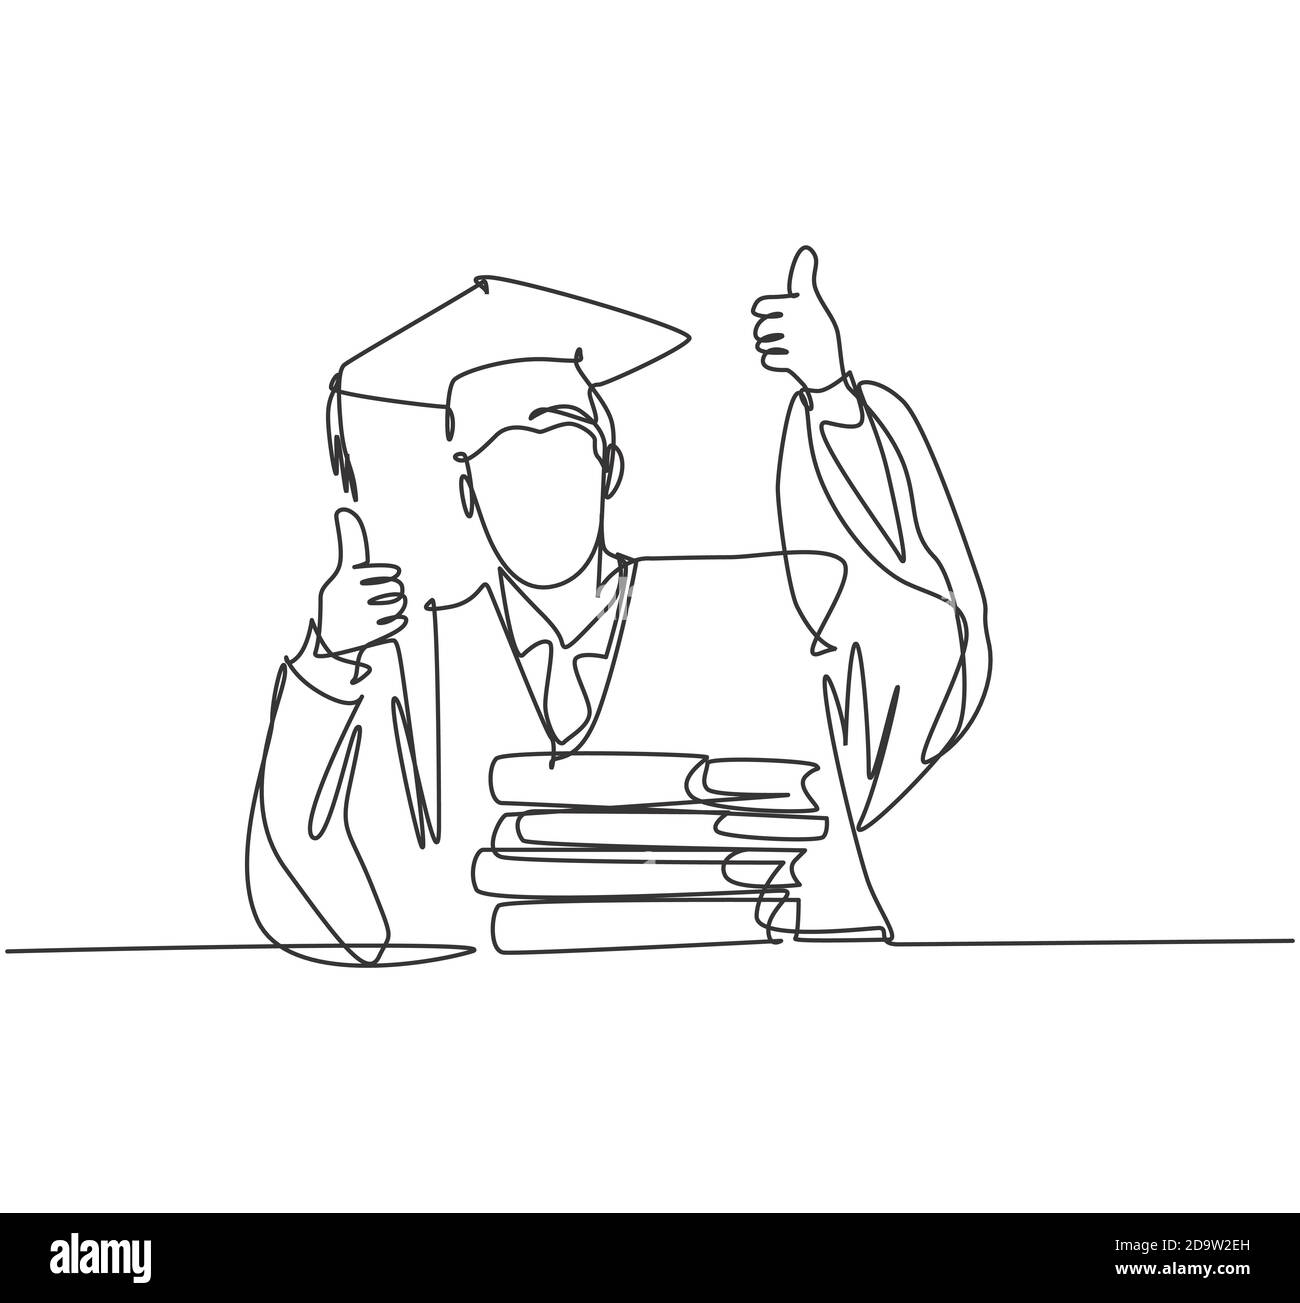 Un dessin de ligne de jeune heureux diplômé de l'université de sexe masculin porter l'uniforme de graduation et donner le pouce vers le haut mouvement à l'avant de la pile de livres Illustration de Vecteur